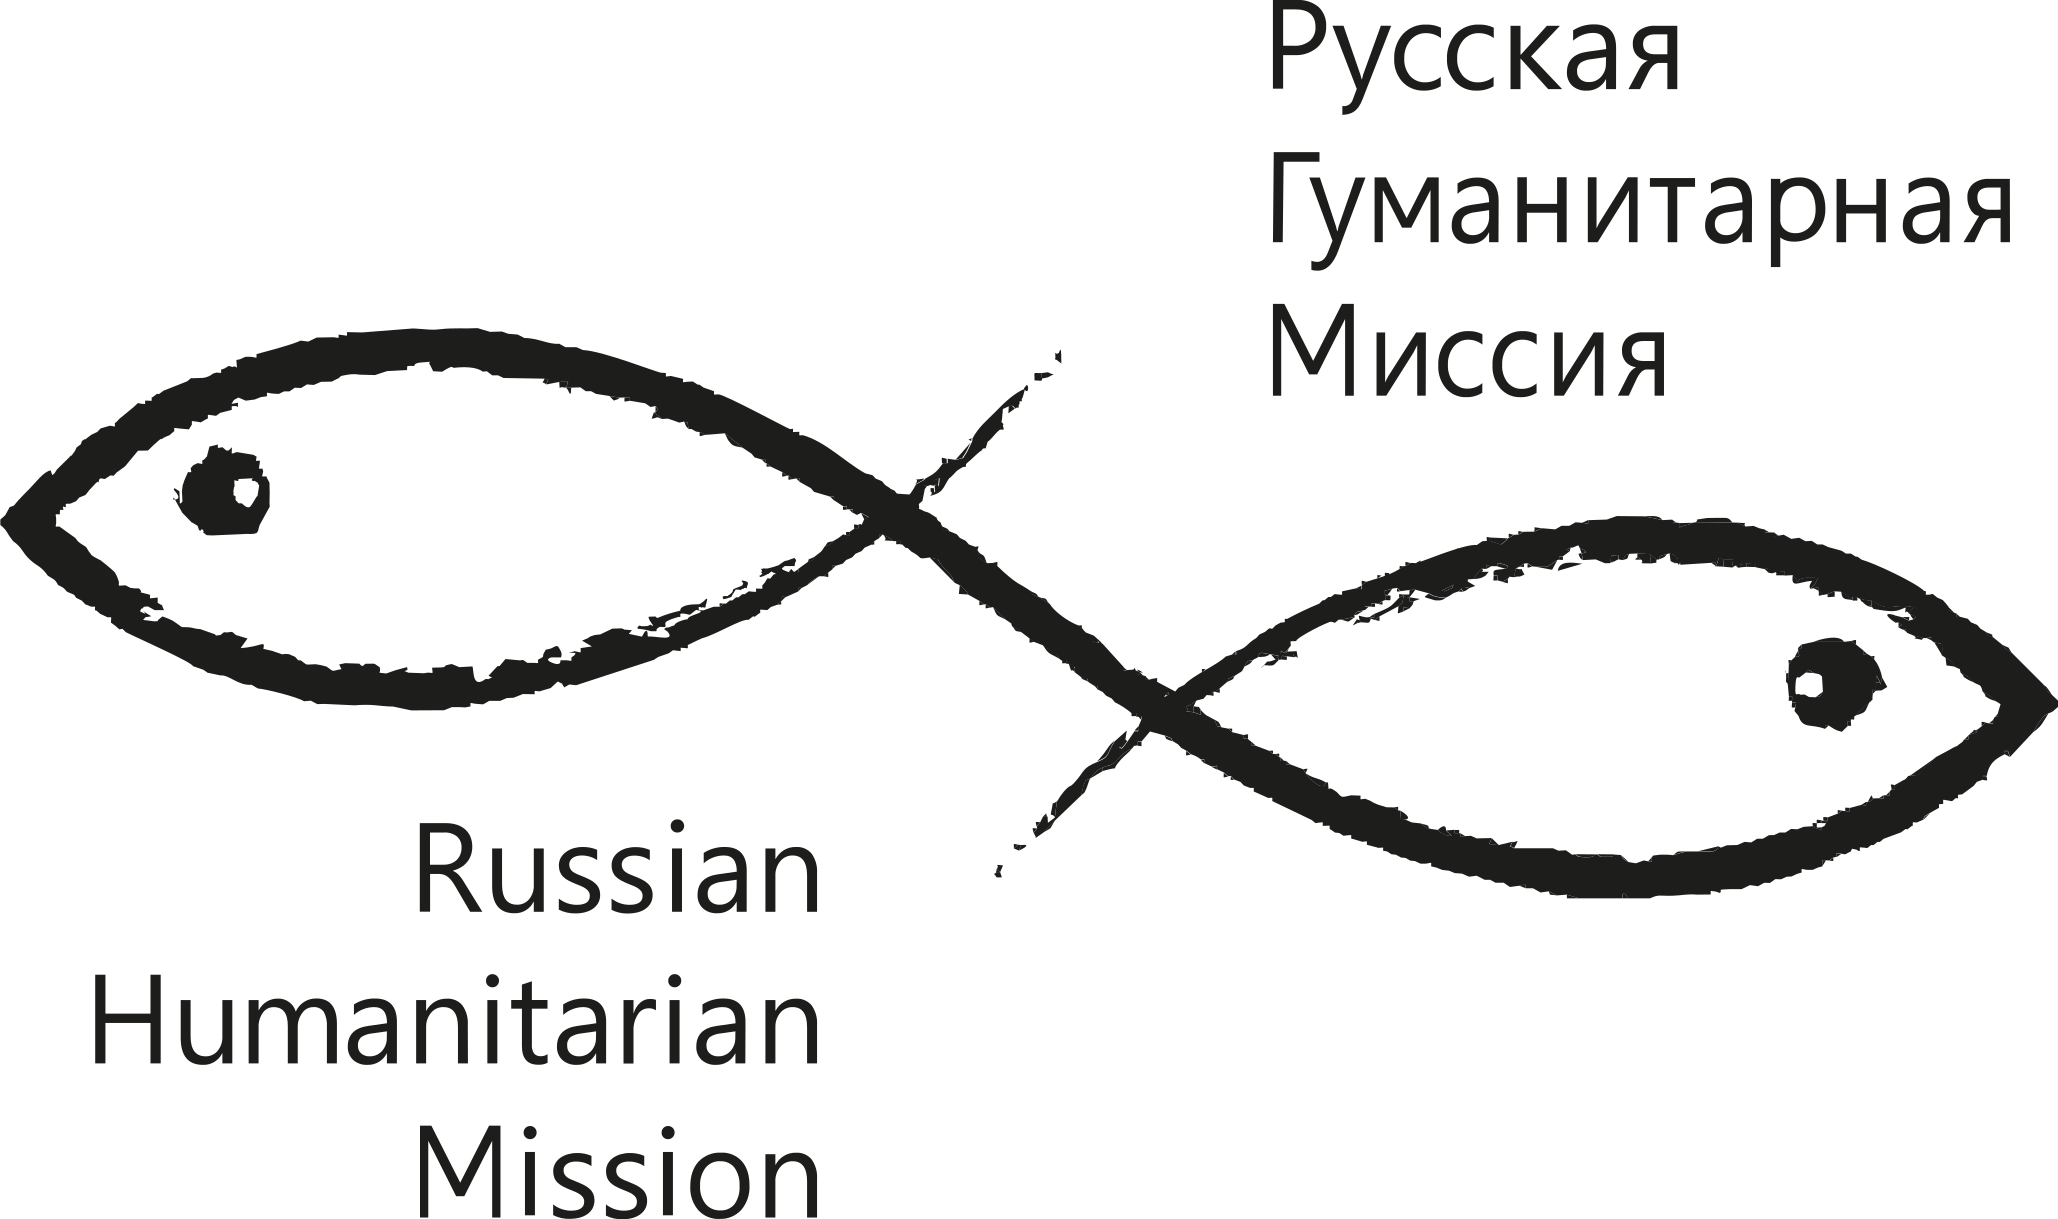 Автономная некоммерческая организация поддержки гуманитарных программ "Русская гуманитарная миссия"